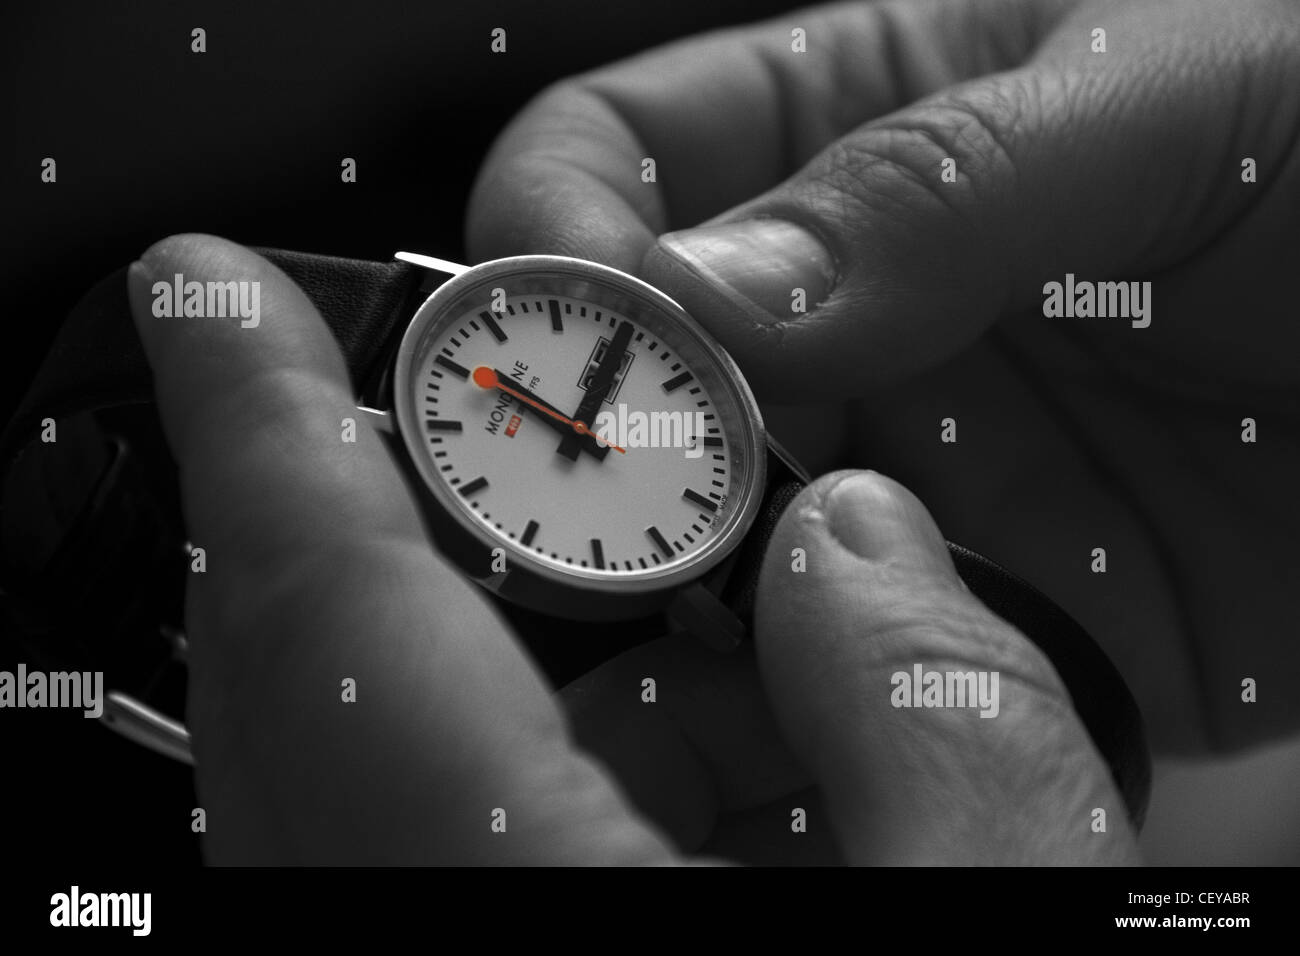 La réinitialisation d'une montre pour l'heure d'été ou heure d'été britannique CEST par une heure en mars et octobre. Banque D'Images